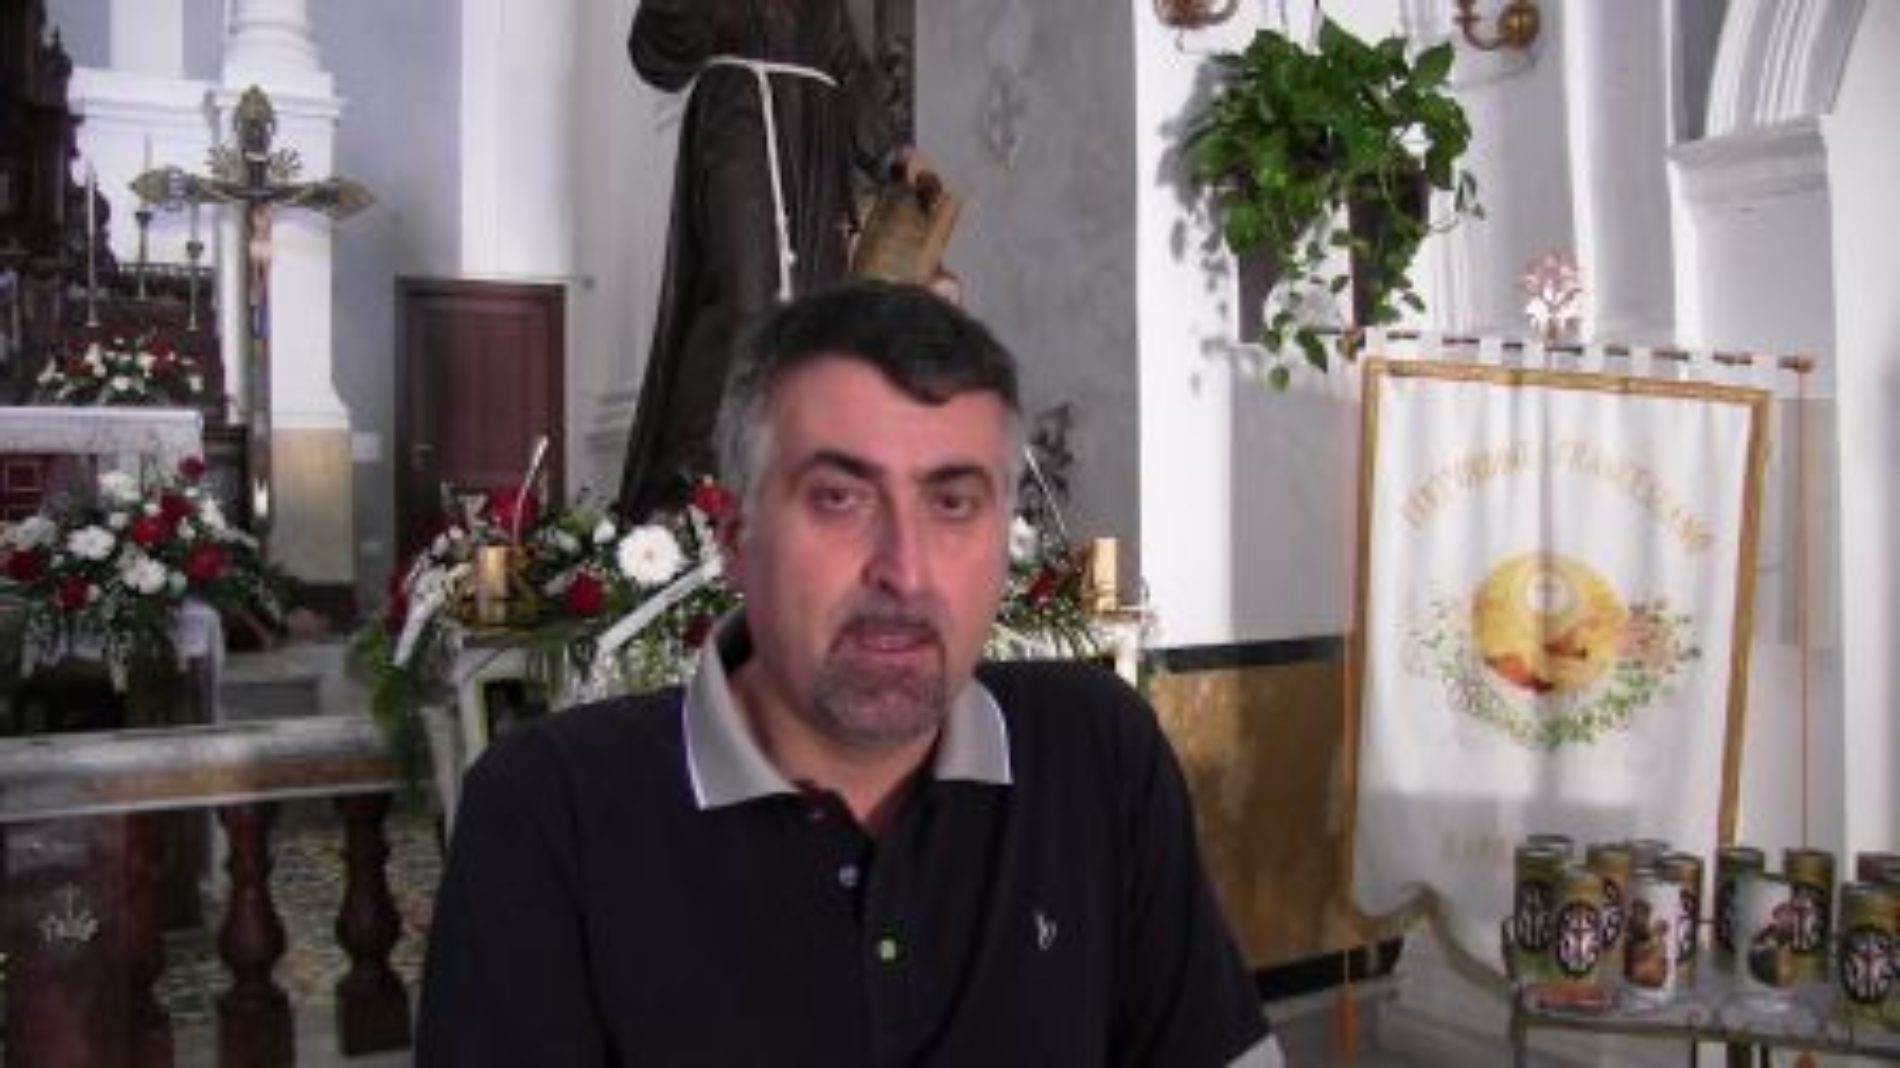 Video / Don Giacomo Zangara sulla Festa di San Francesco e la sua tradizione religiosa